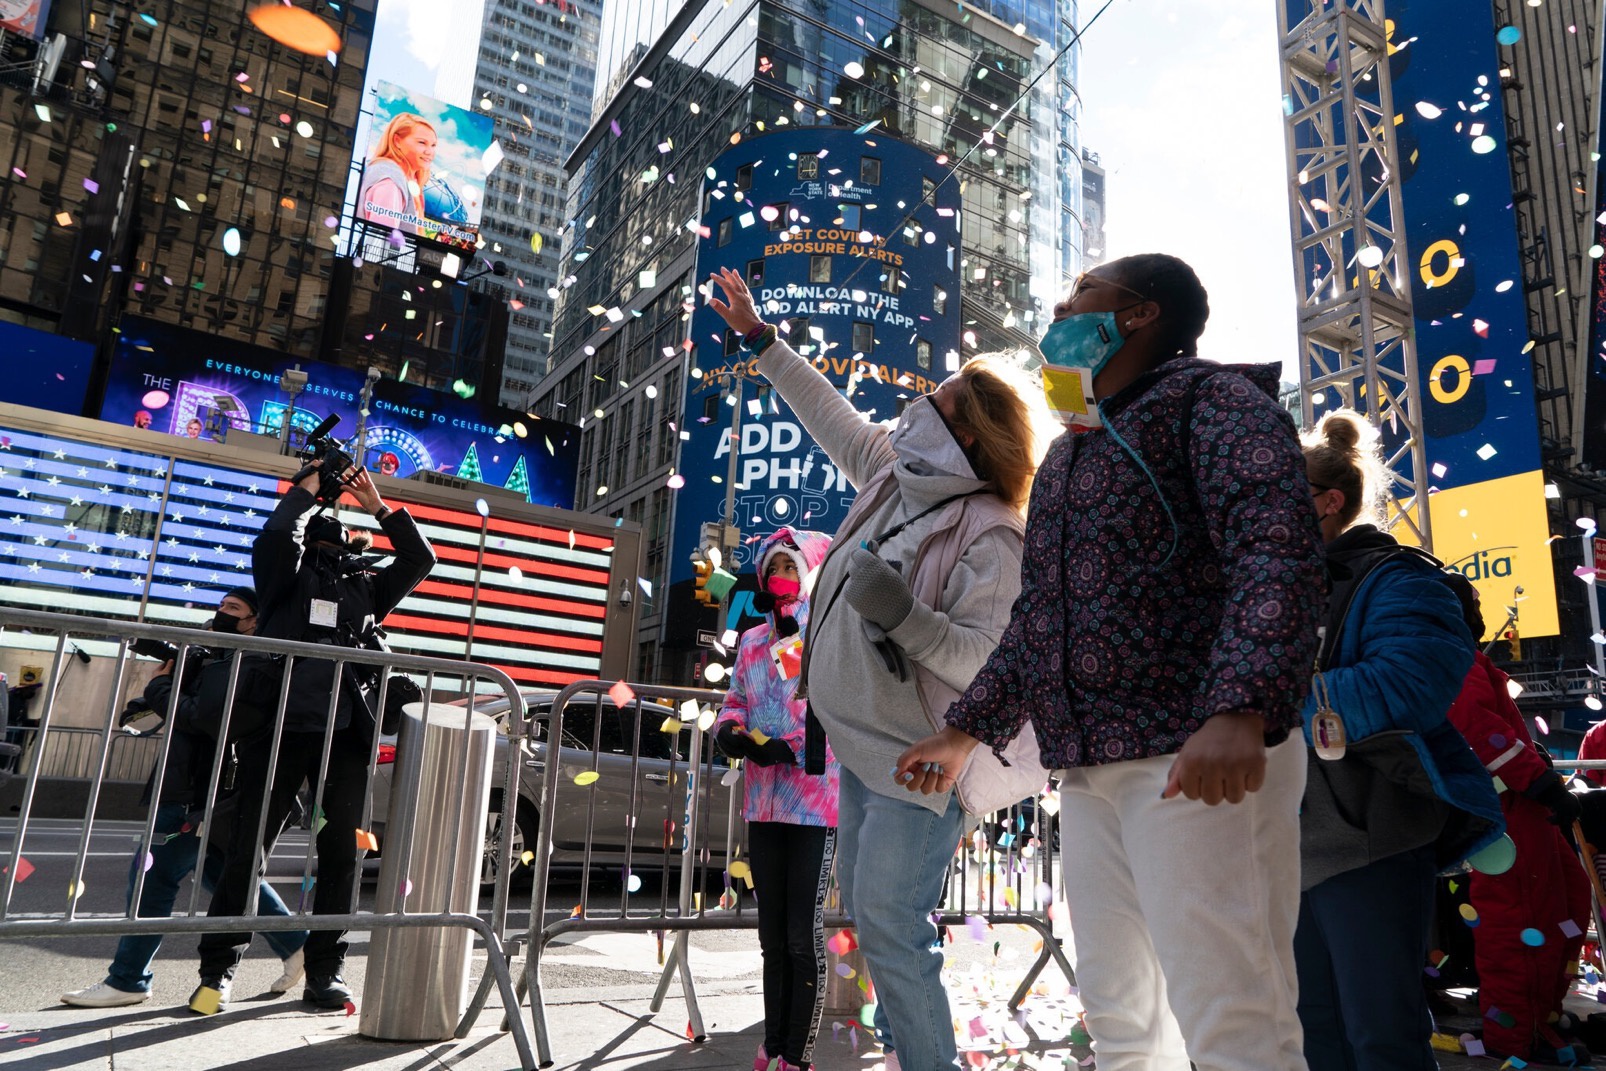  △2021年跨年活动将表彰在新冠疫情大流行期间帮助纽约维持运转的前线工作人员（图片来源：纽约时报）